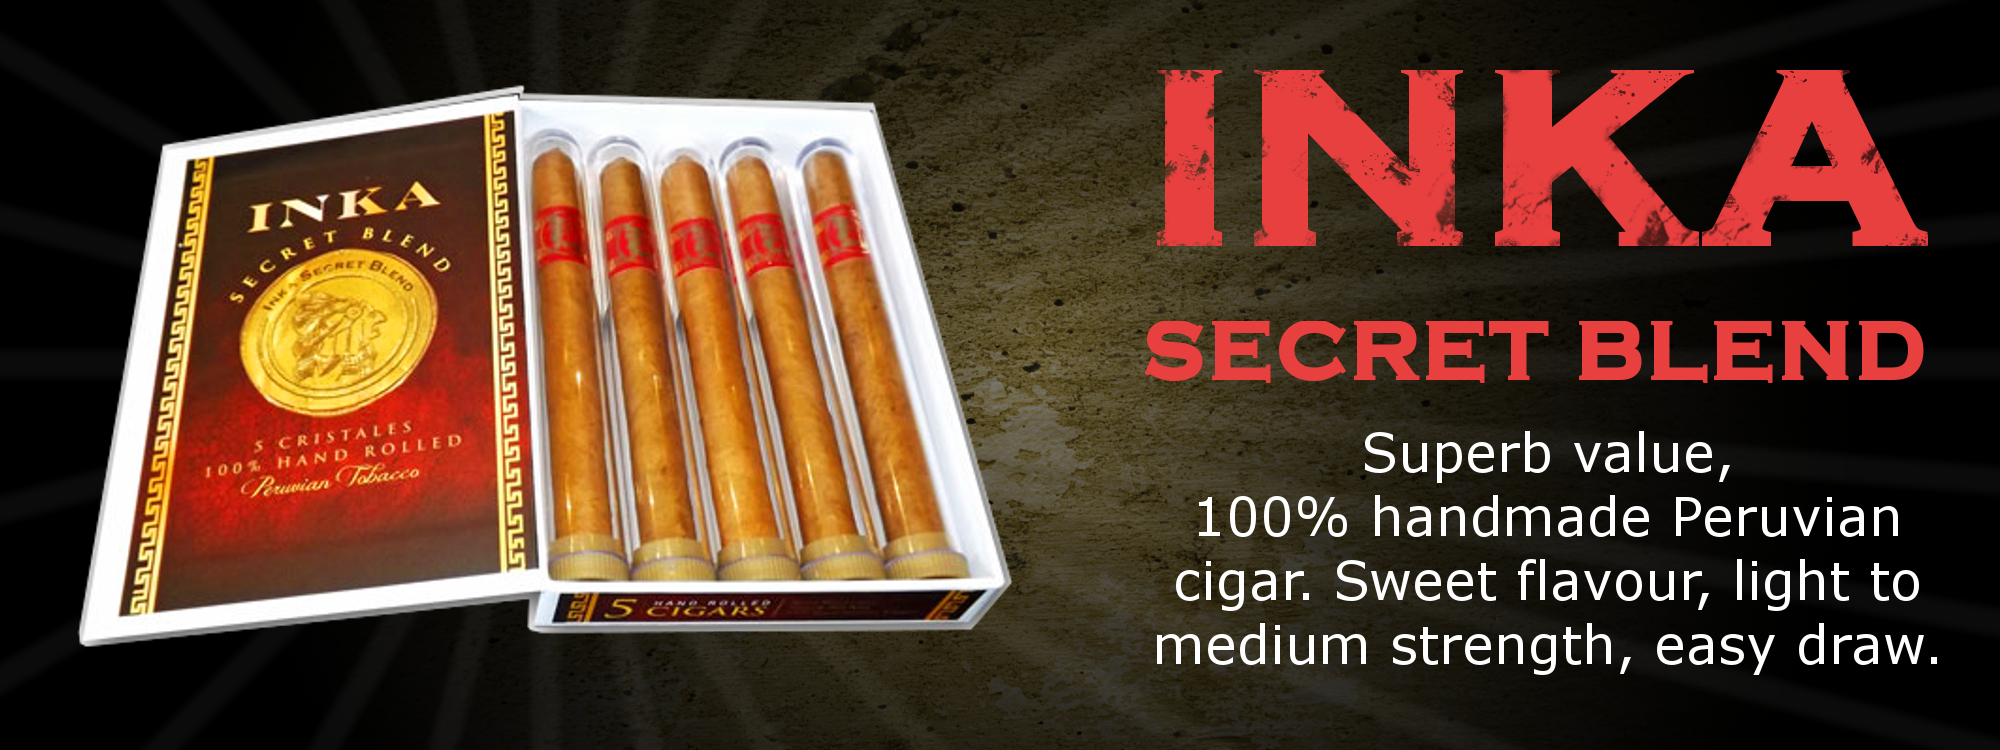 Inka Secret Blend - best value quality cigars